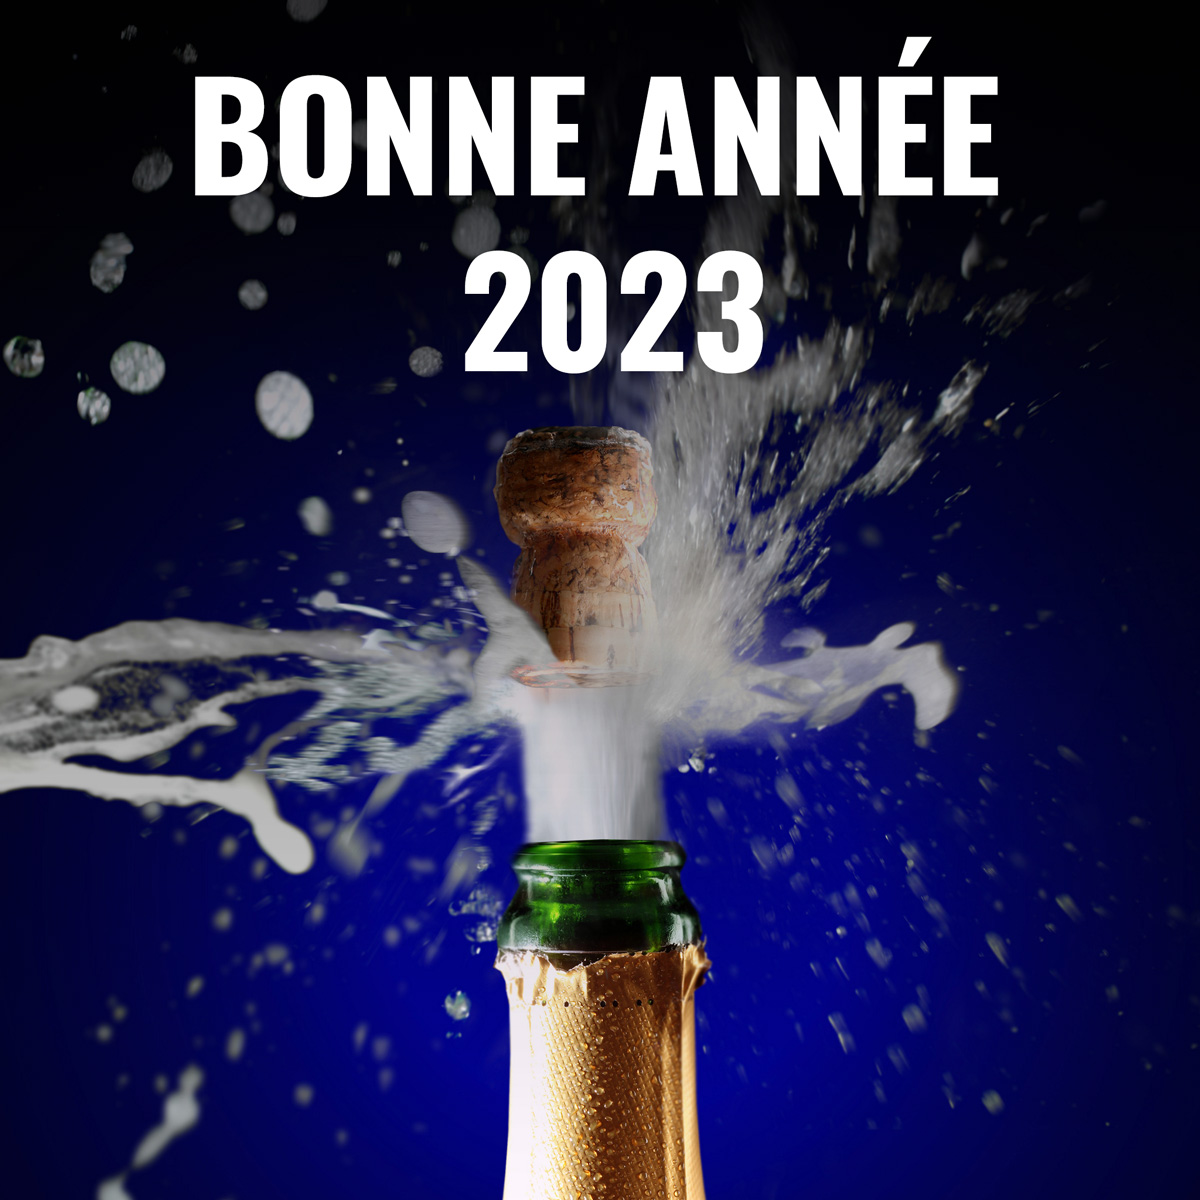 Image de vœux avec un champagne
 débouché pour 2023